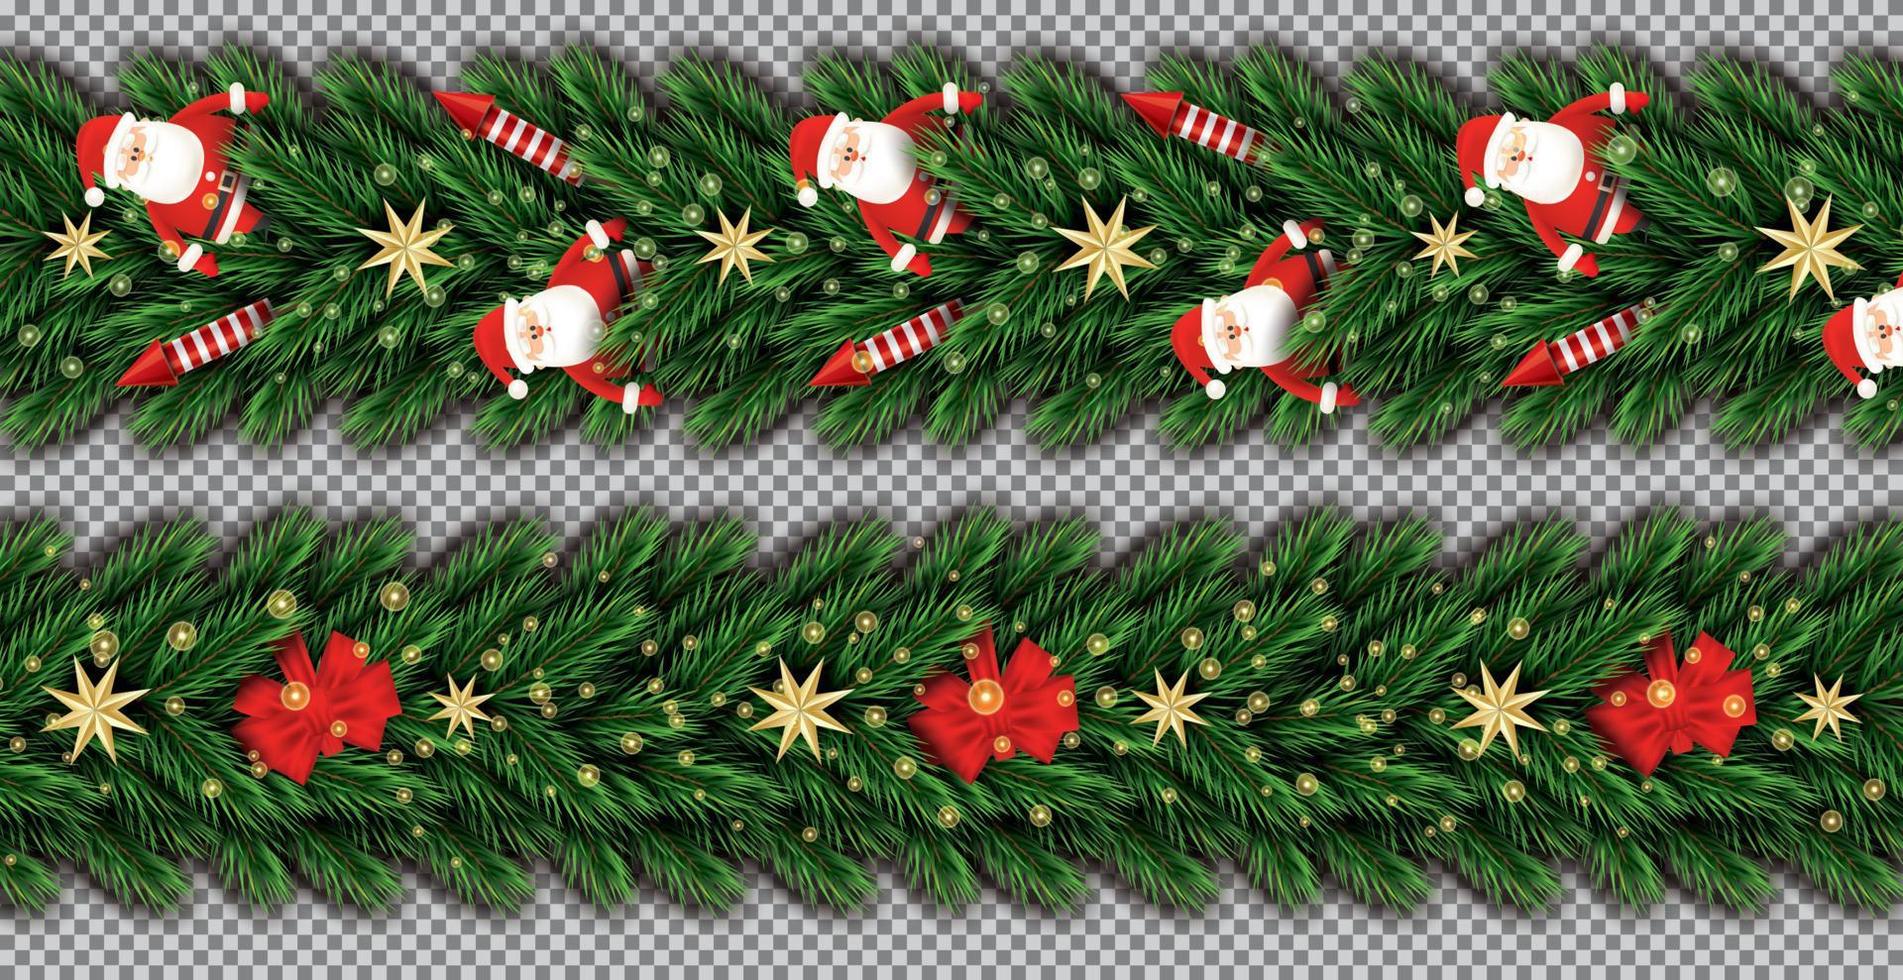 gräns uppsättning med santa claus, jul träd grenar, gyllene stjärnor, röd raketer och röd rosett på transparent bakgrund. vektor